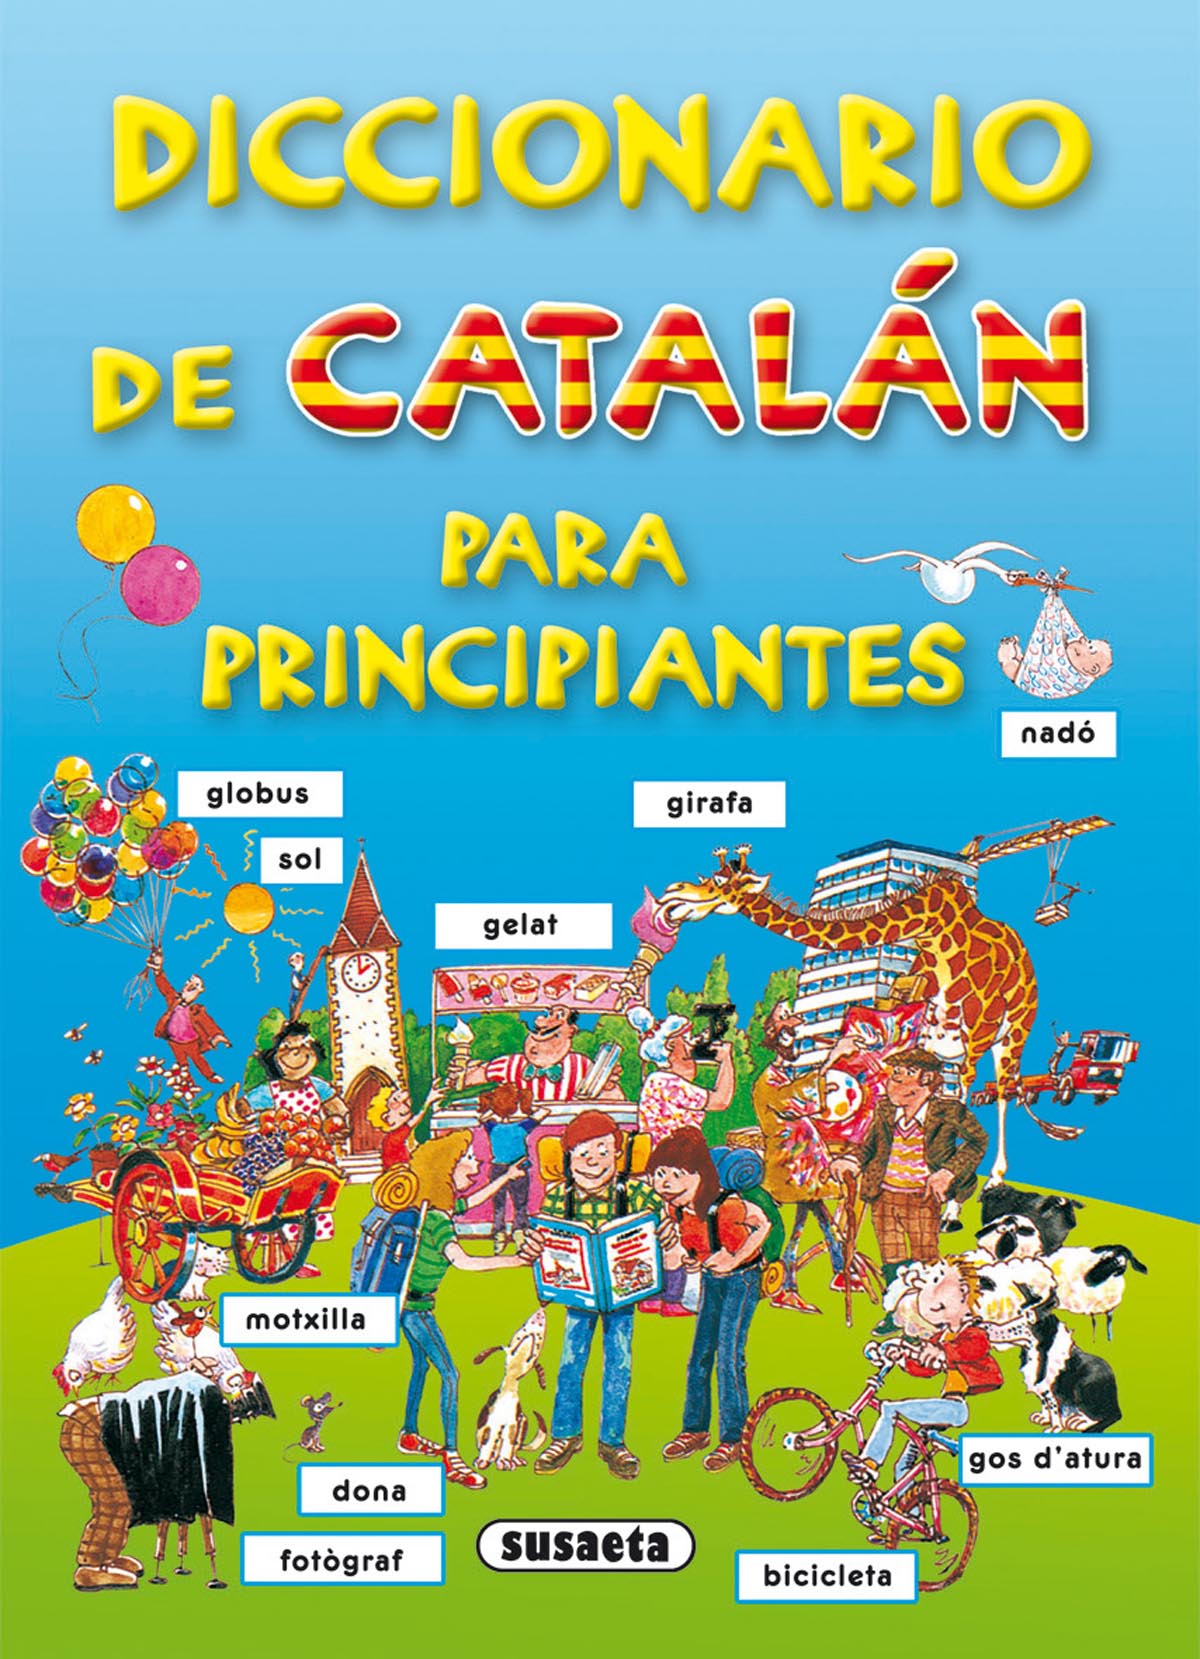 Diccionario de catalán para principiantes